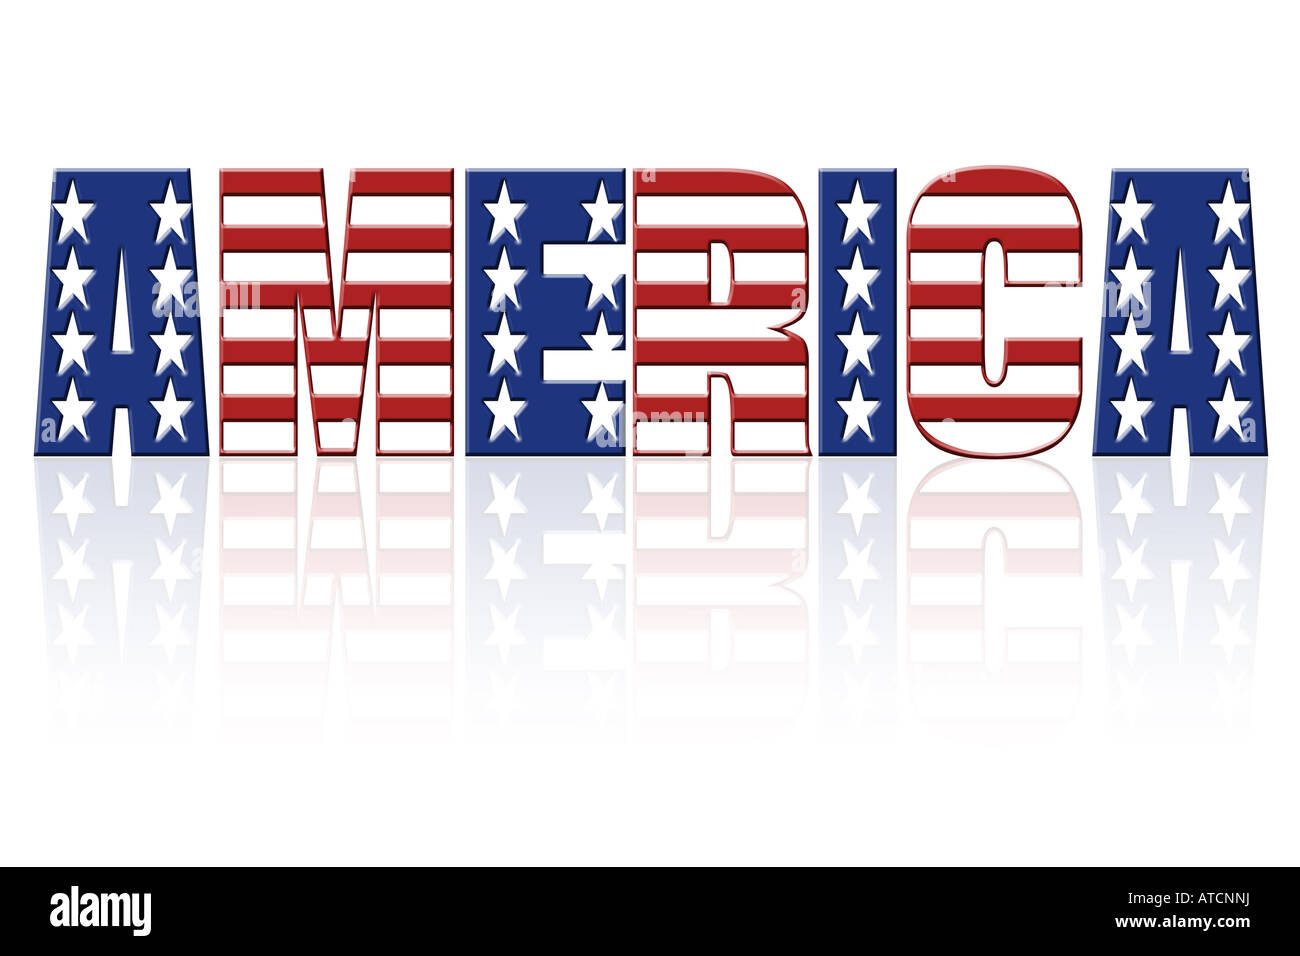 Amerika-Wort mit überlagerten amerikanische Flagge Sterne und Streifen-Muster Stockfoto